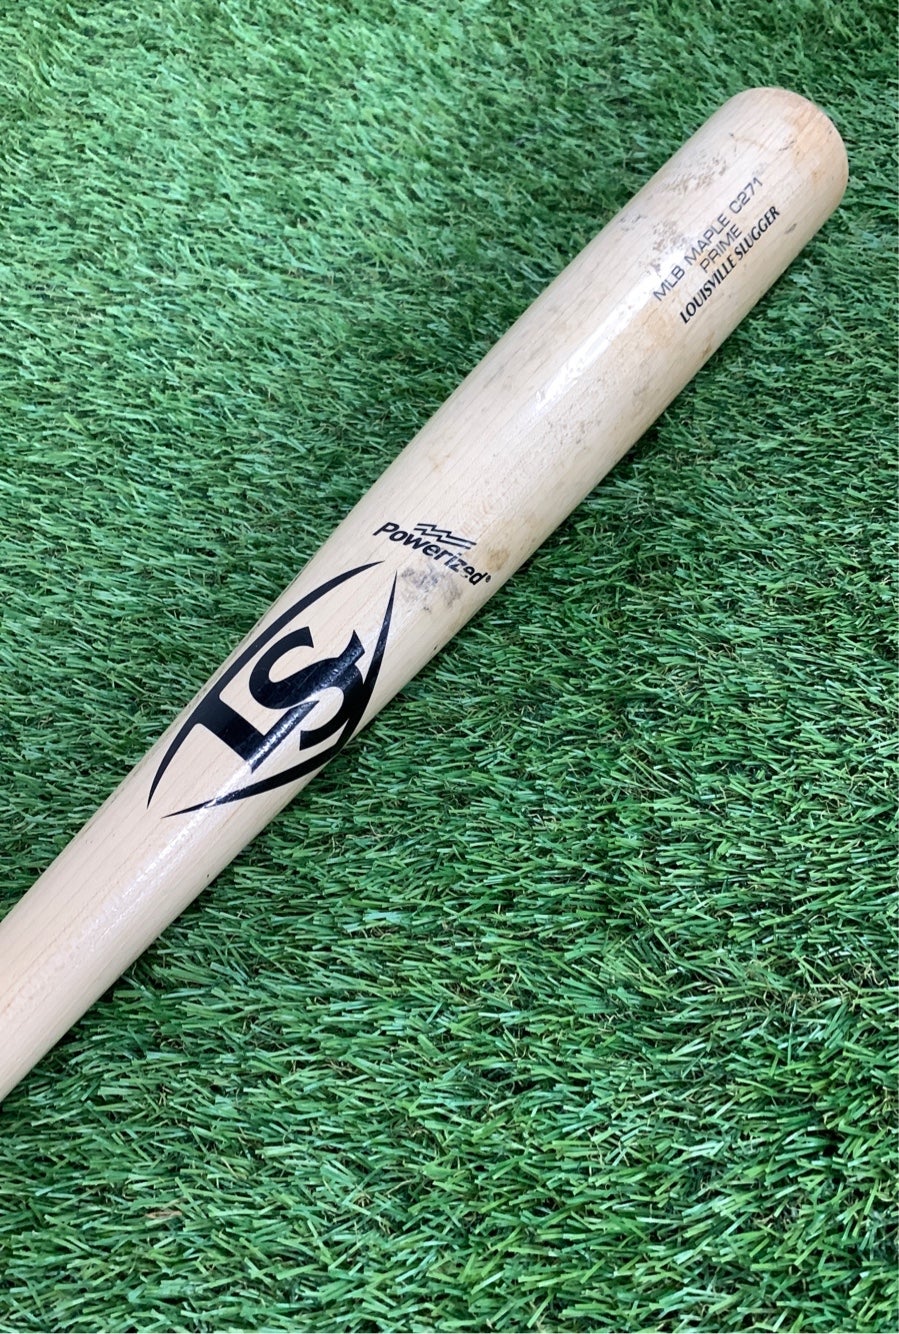 Louisville Slugger Prime Bellinger - Maple CB35 Wood Baseball Bat